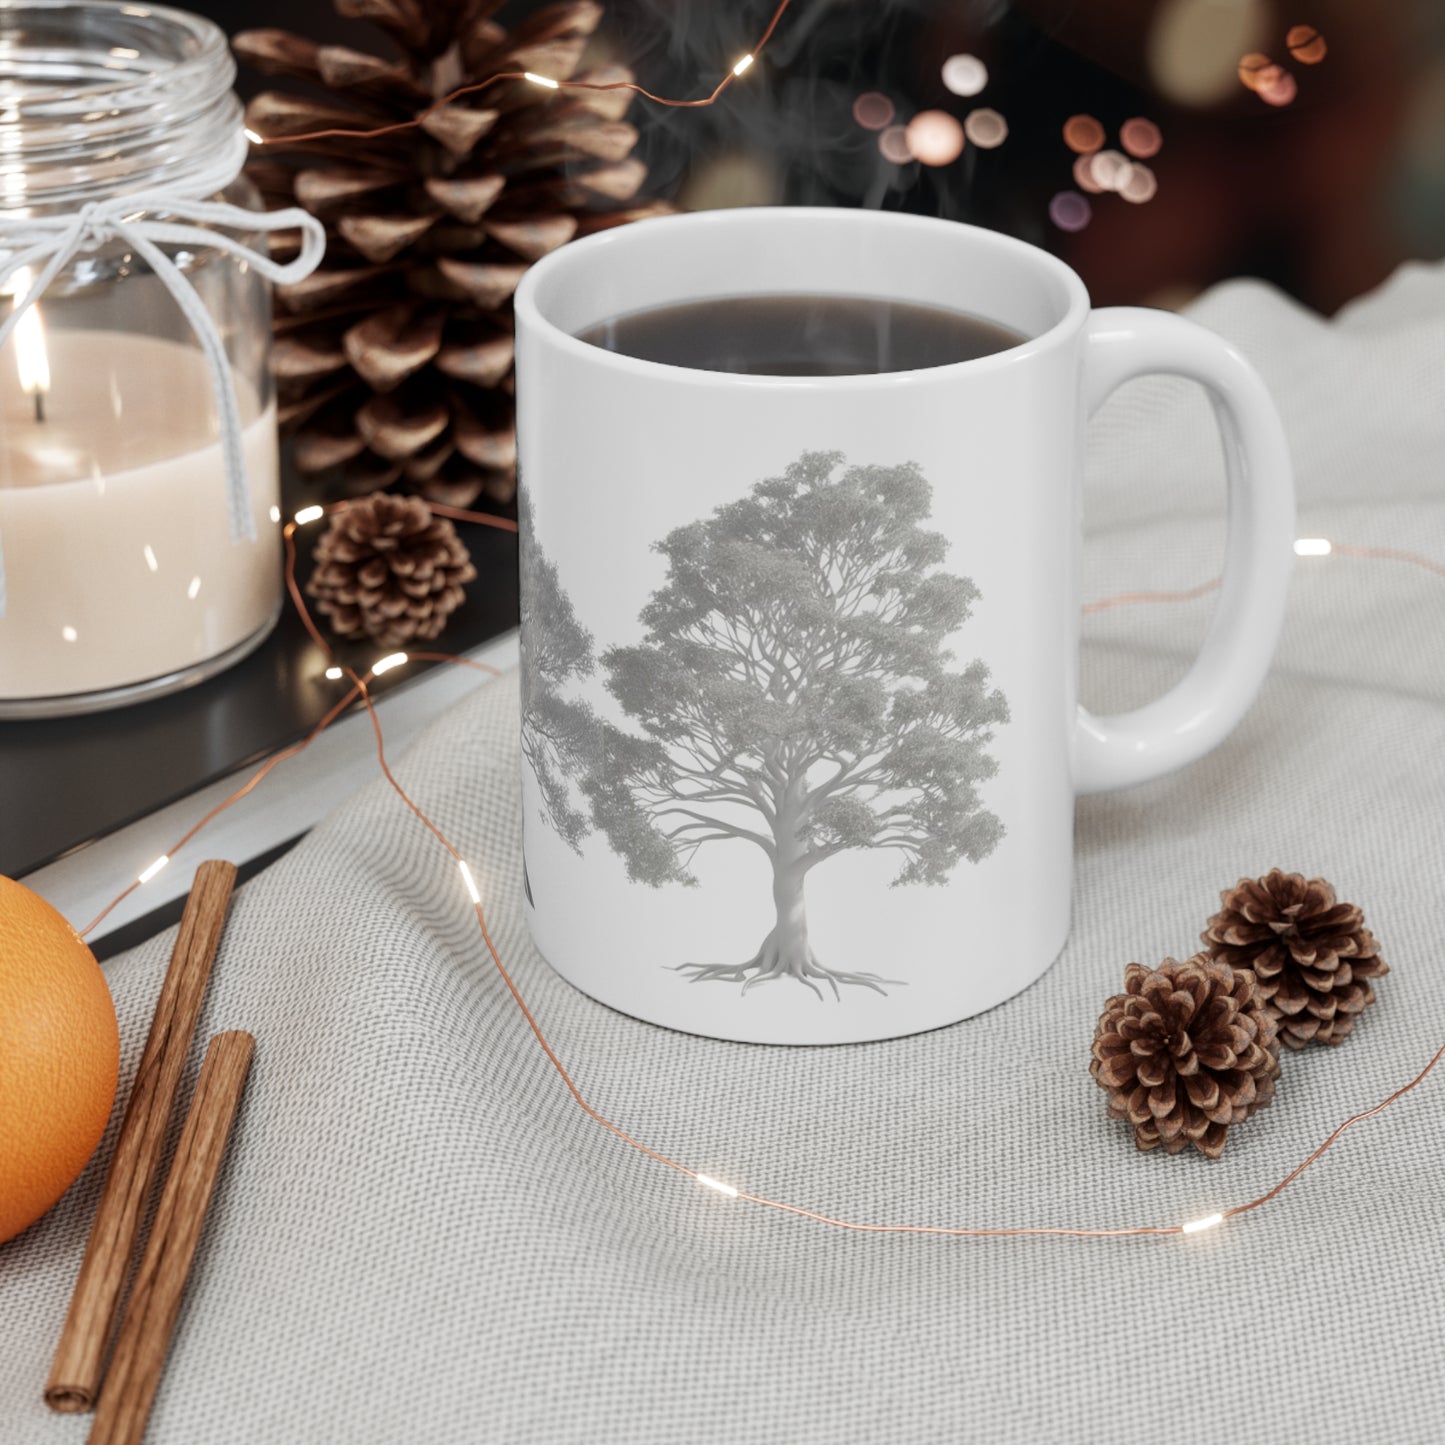 Silver Trees Mug - Ceramic Coffee Mug 11oz